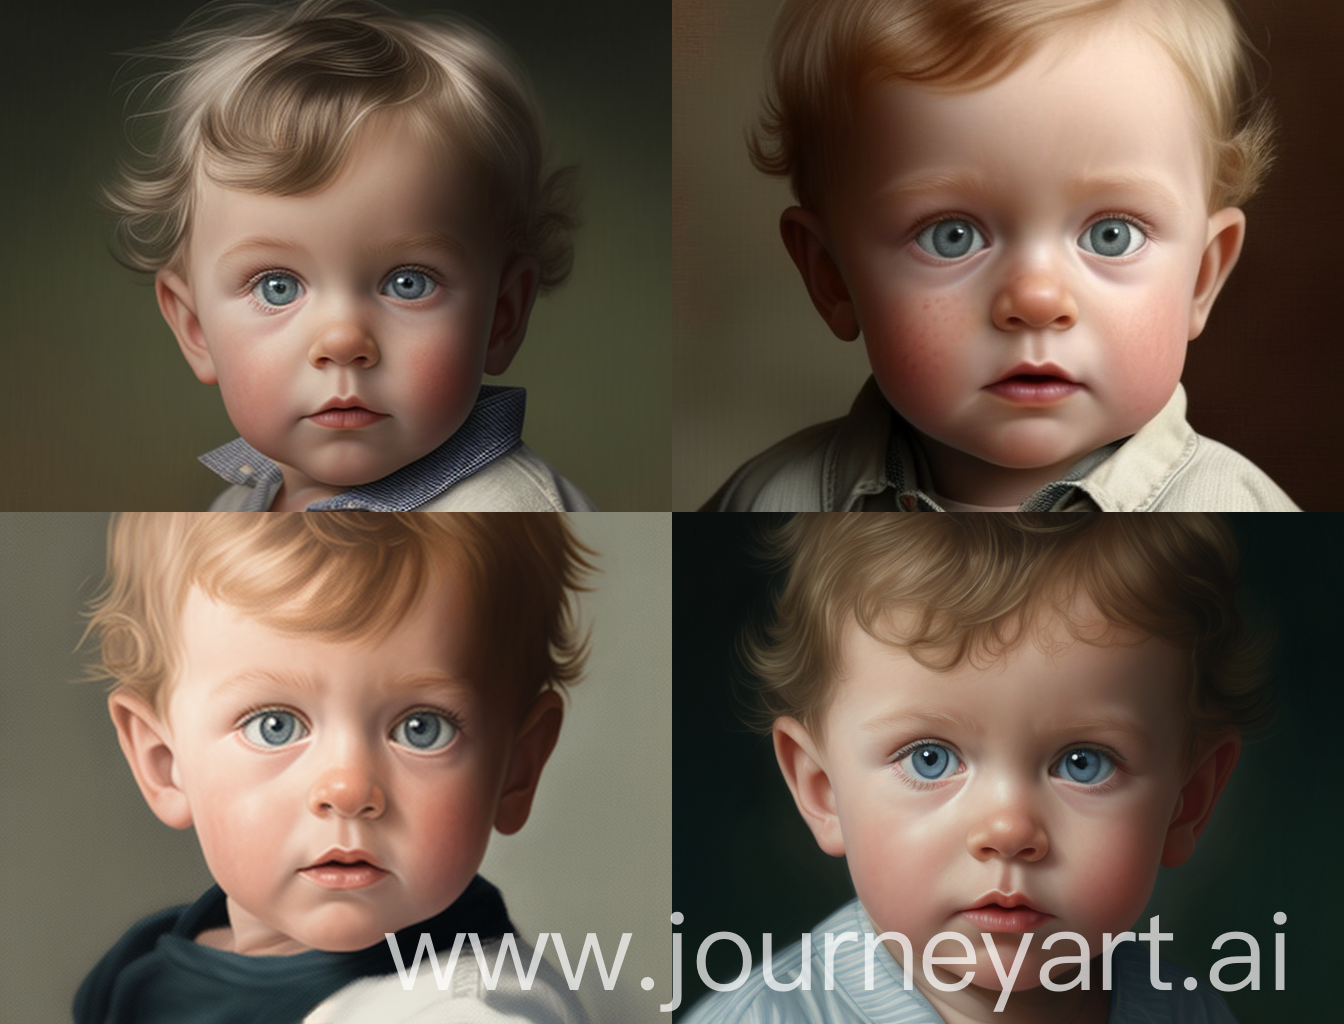 мальчик 10 месяцев с большими серо-голубыми глазами и немного лопоухий

